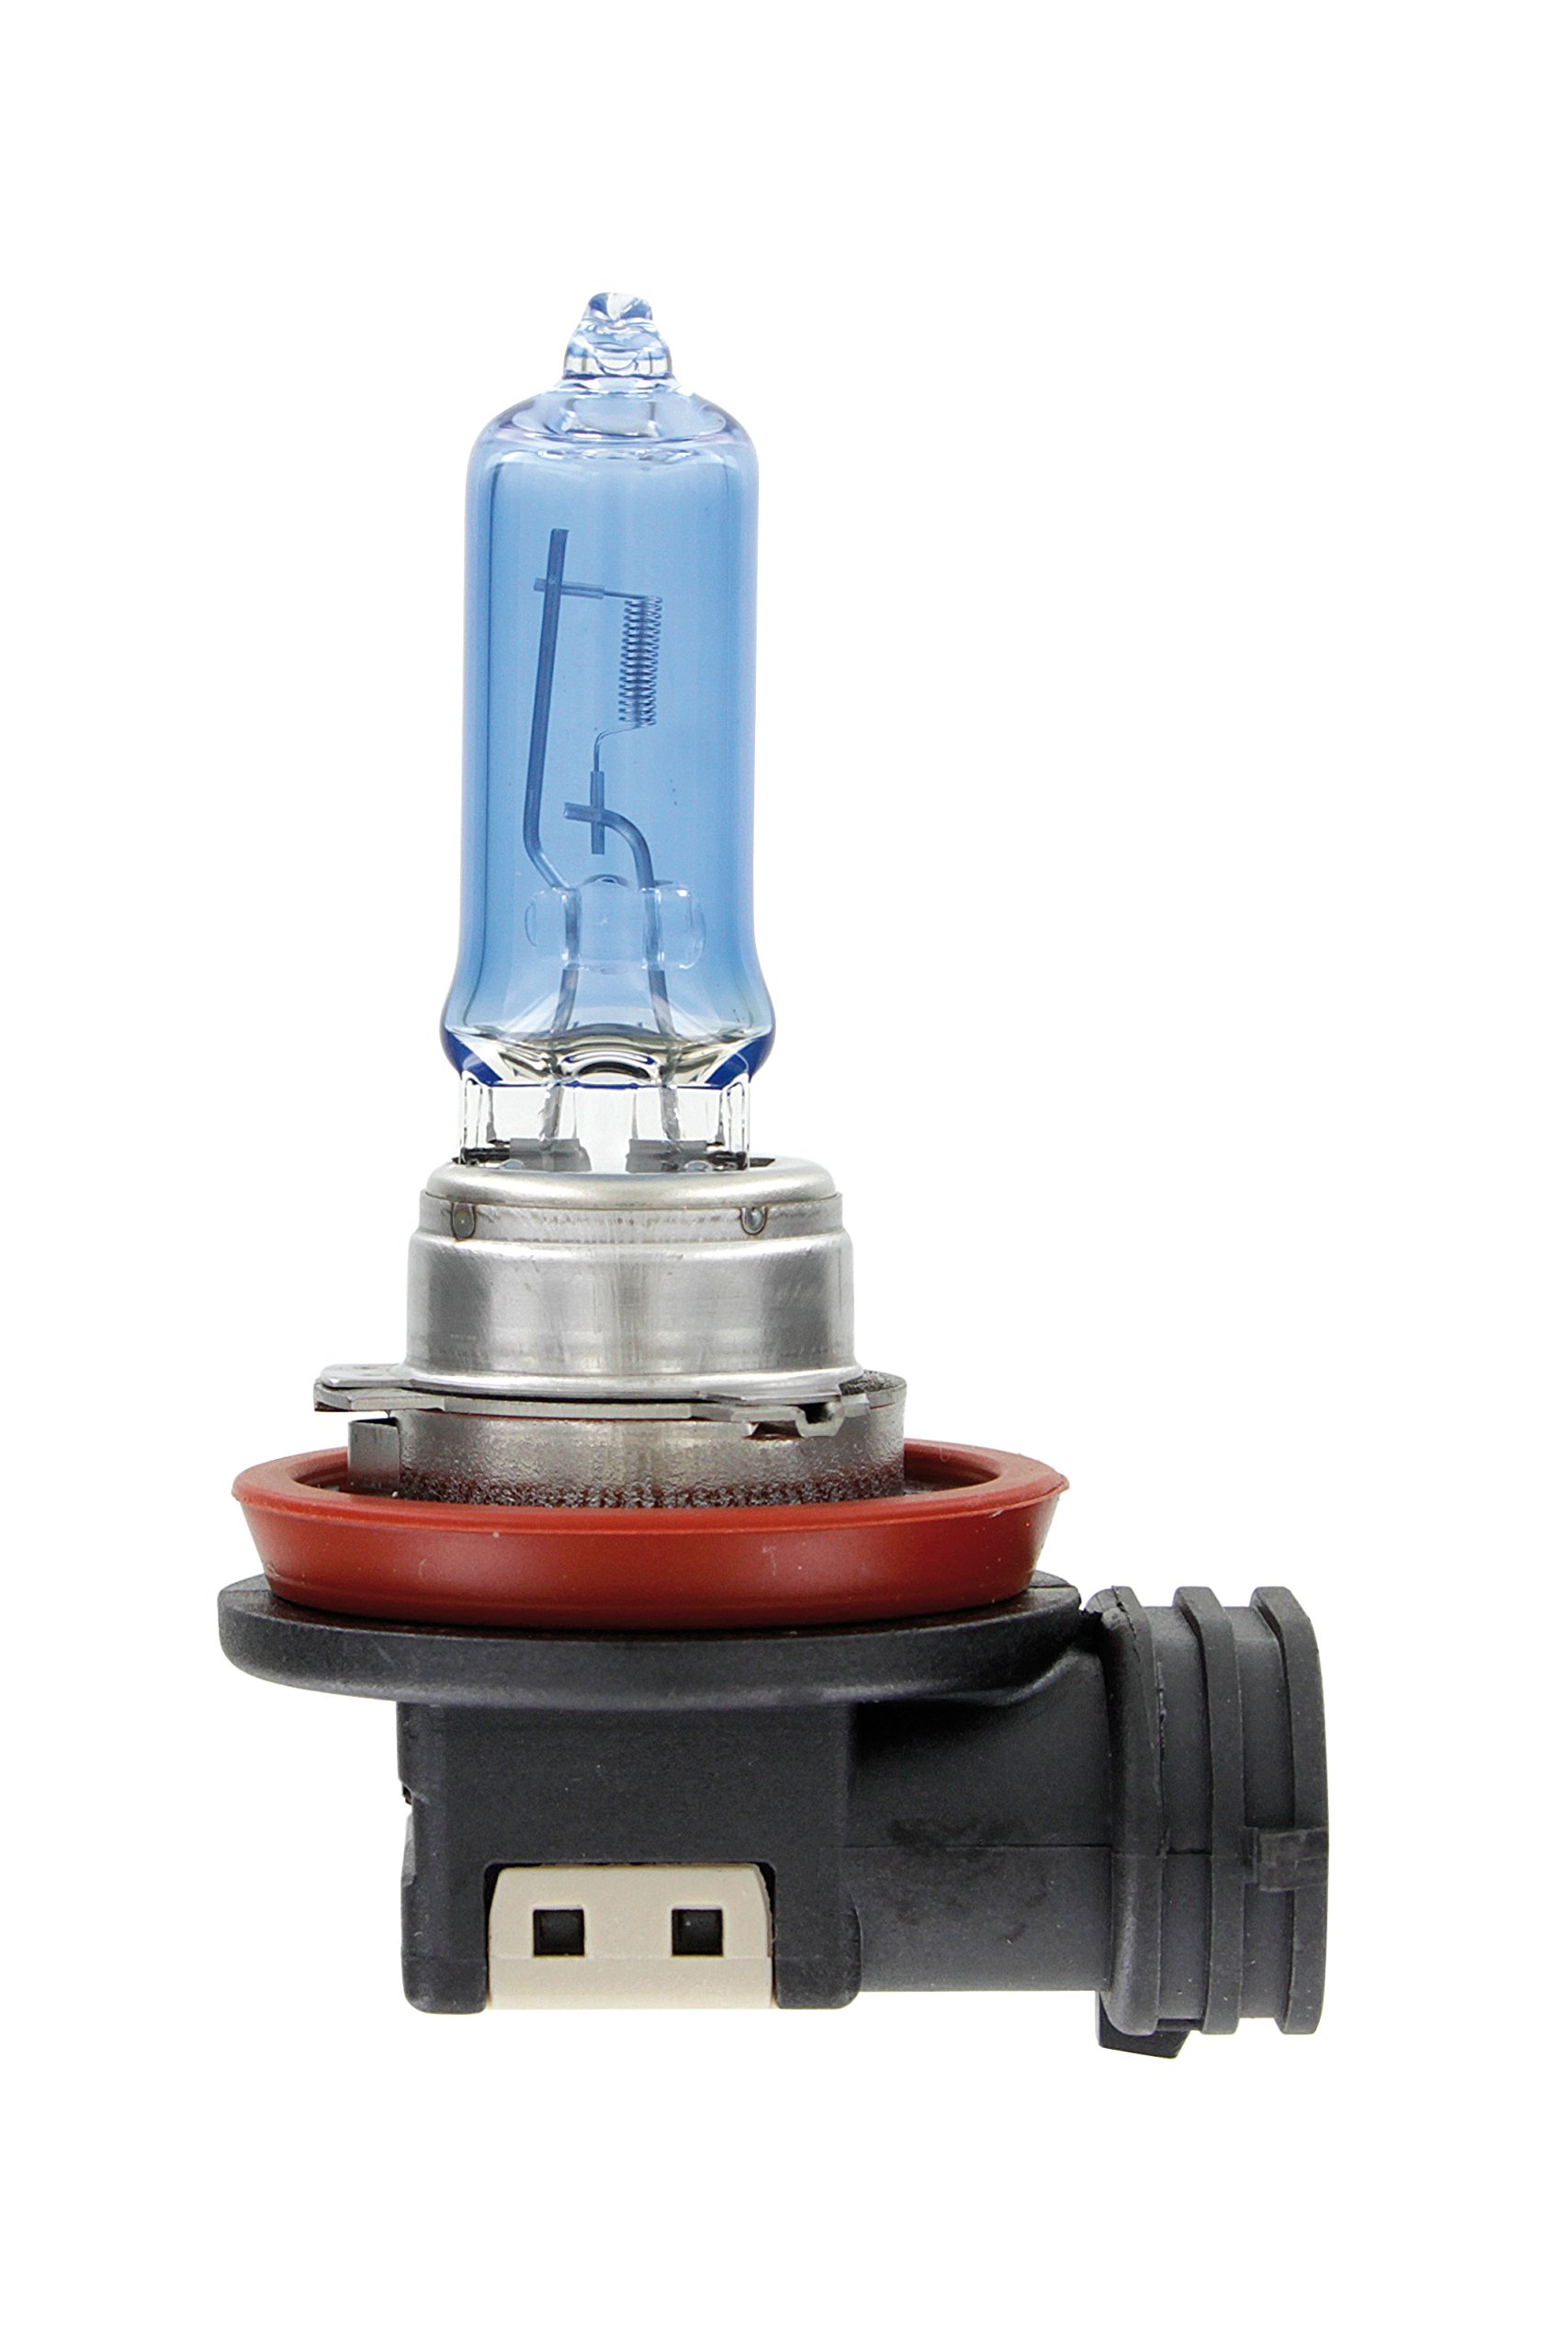 Lampa 58641 Xenon-Ice Lampe H9, 12 V, 65 W von Lampa